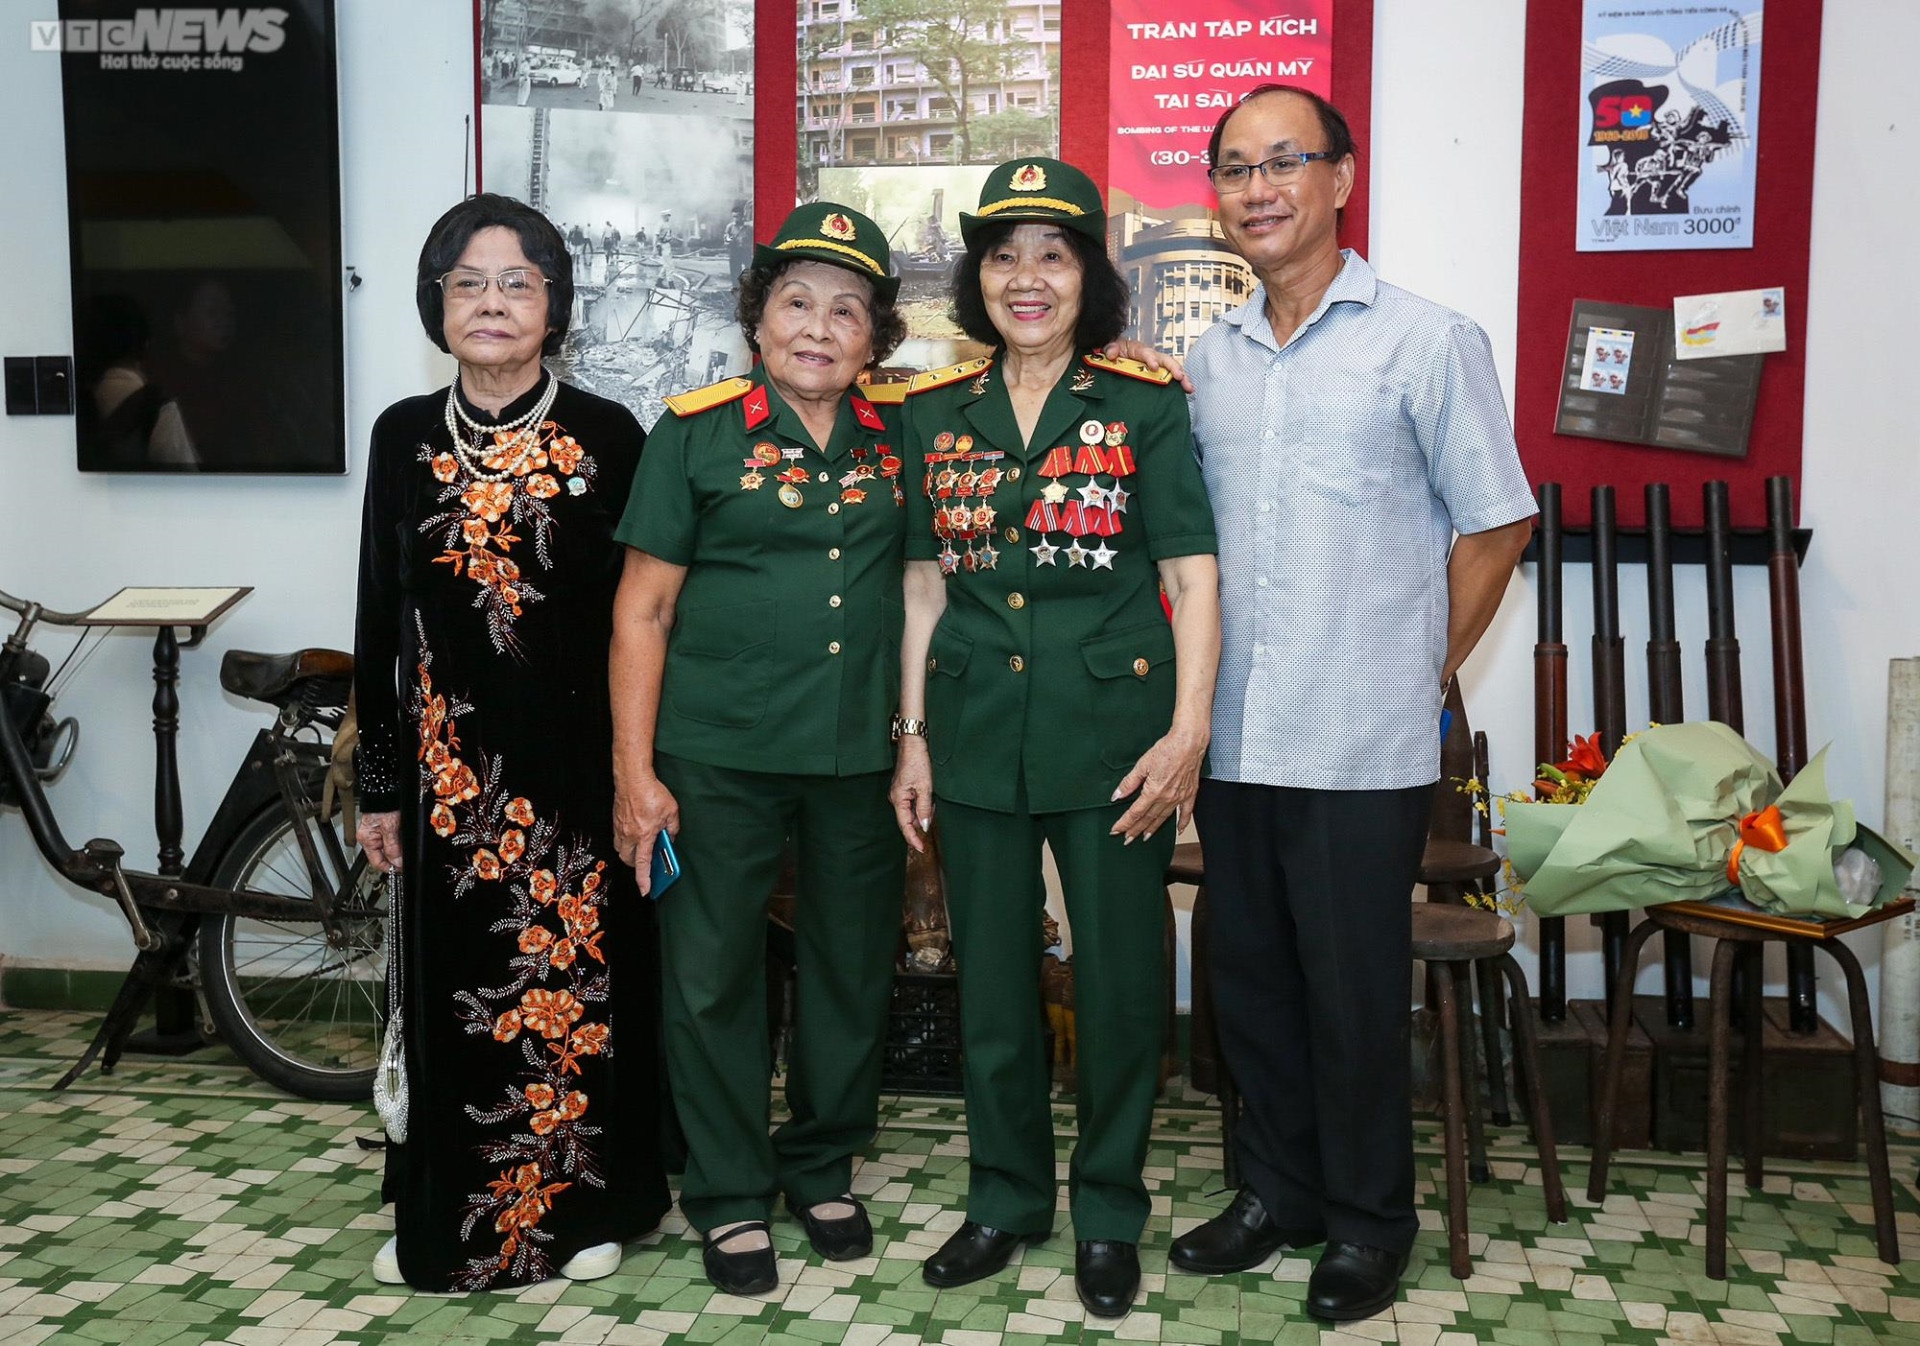 Ngắm hiện vật ở bảo tàng đầu tiên về lực lượng Biệt động Sài Gòn - Gia Định - 6